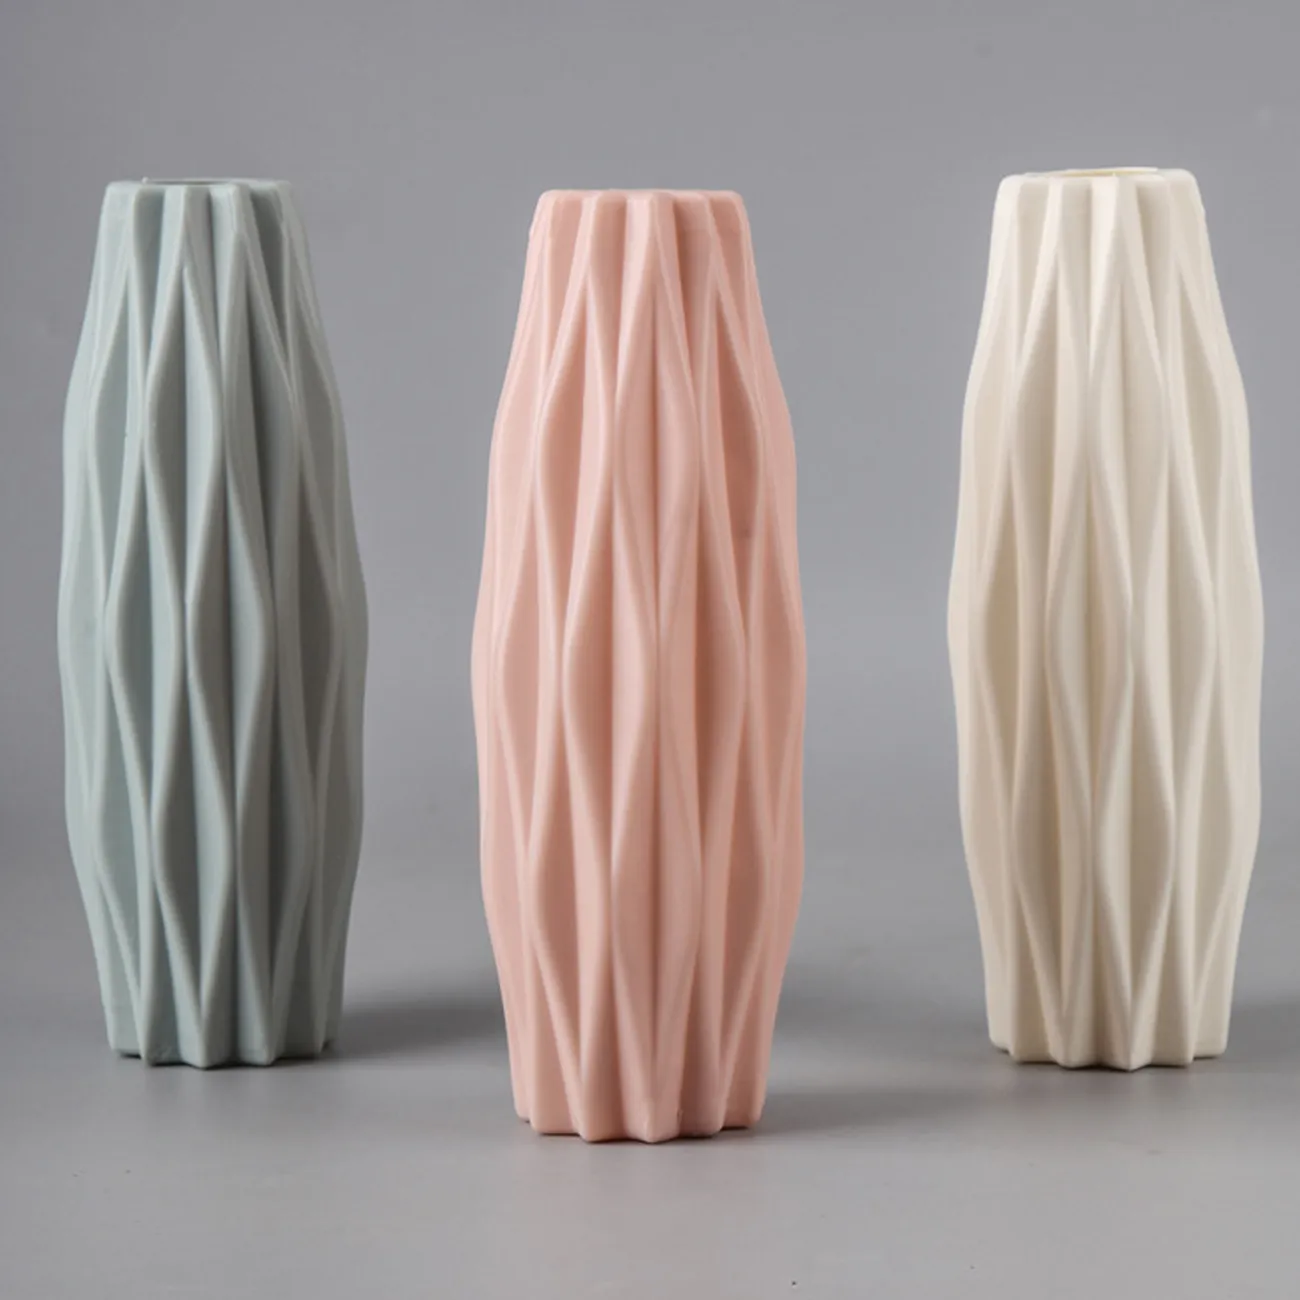 Vase à fleurs en plastique de style nordique créatif pour fleurs fraîches et séchées Vert big image 1